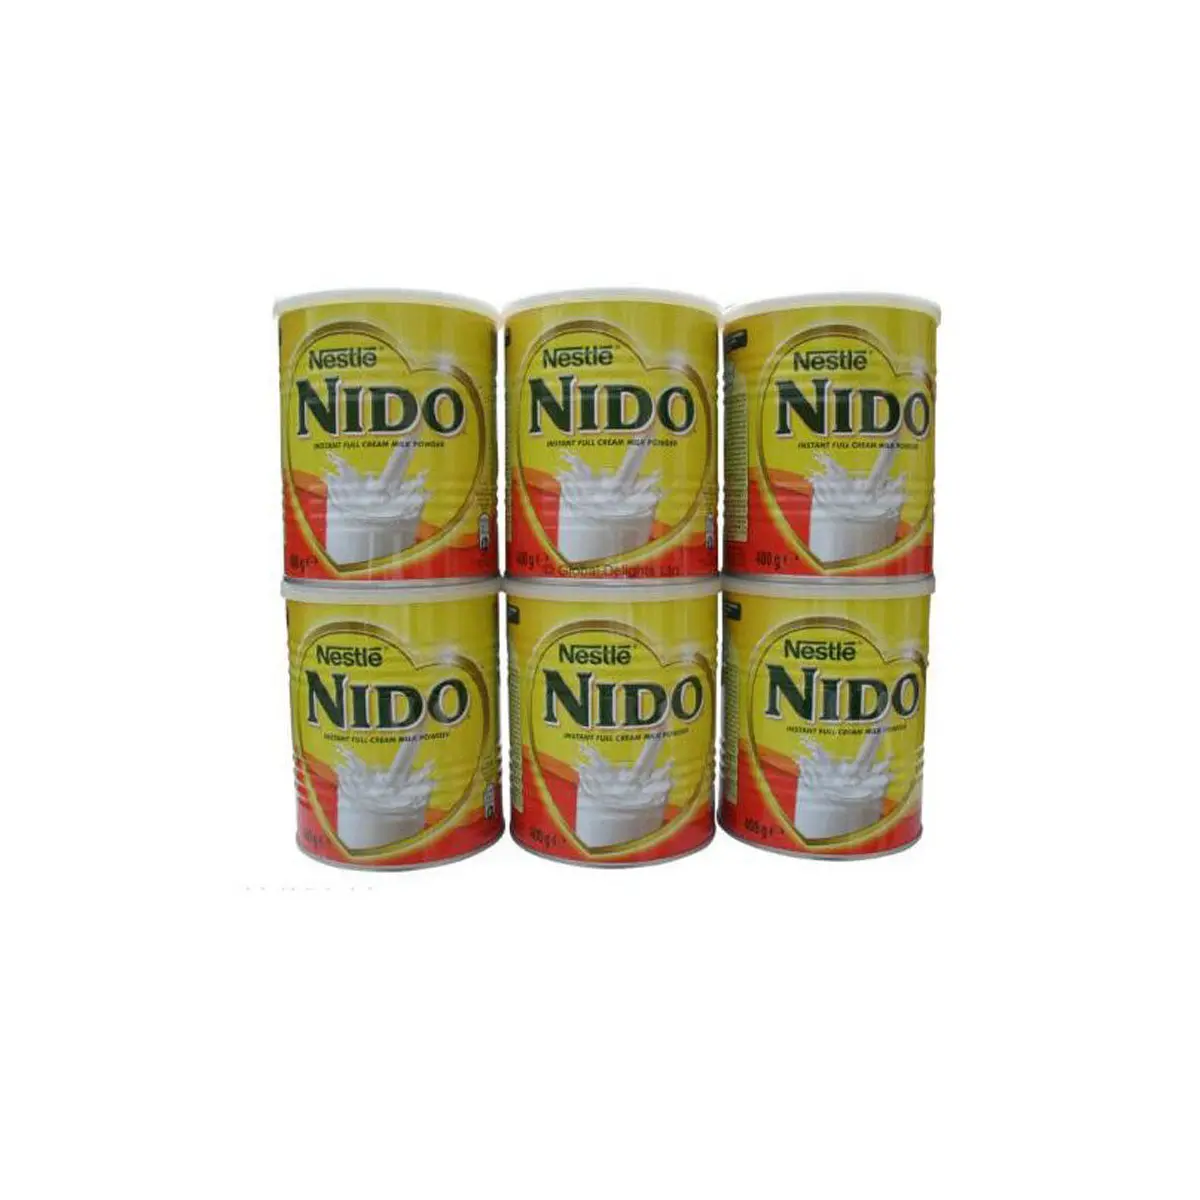 Bán chạy nhất Nido Sữa bột/Nestle Nido / Nido sữa 400g